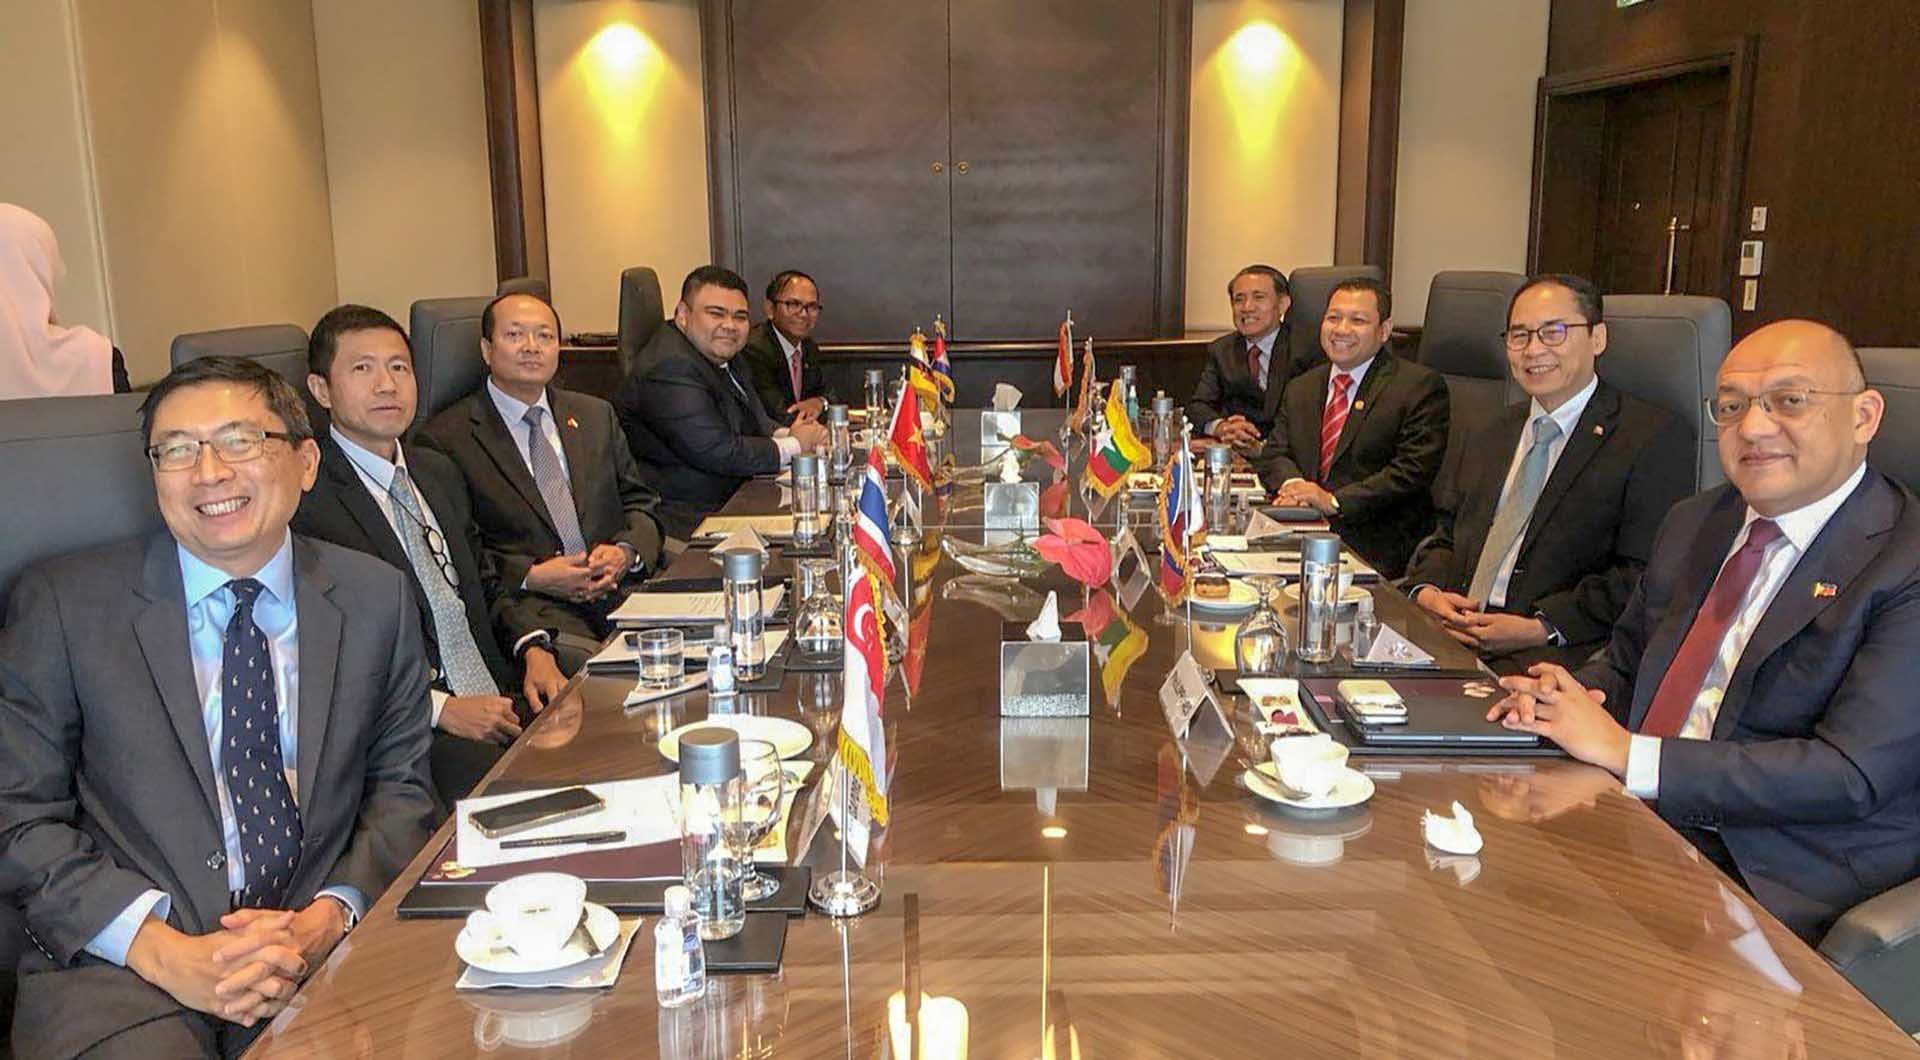 Đại sứ các nước ASEAN bày tỏ tin tưởng Việt Nam với kinh nghiệm của mình sẽ hoàn thành tốt vai trò Chủ tịch.